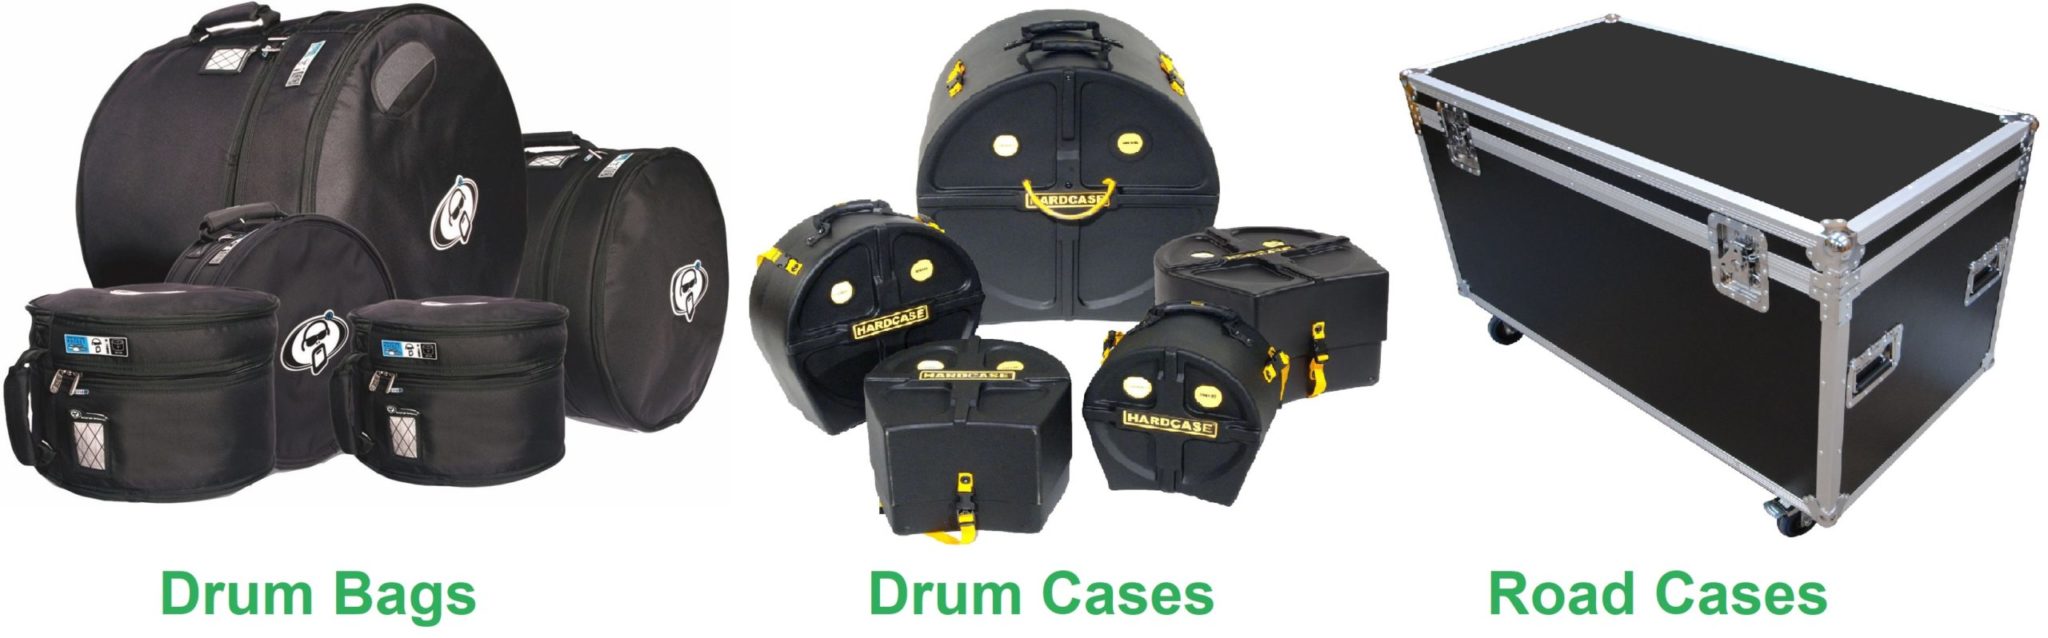 Drum Bags vs Drum Cases vs Road Cases